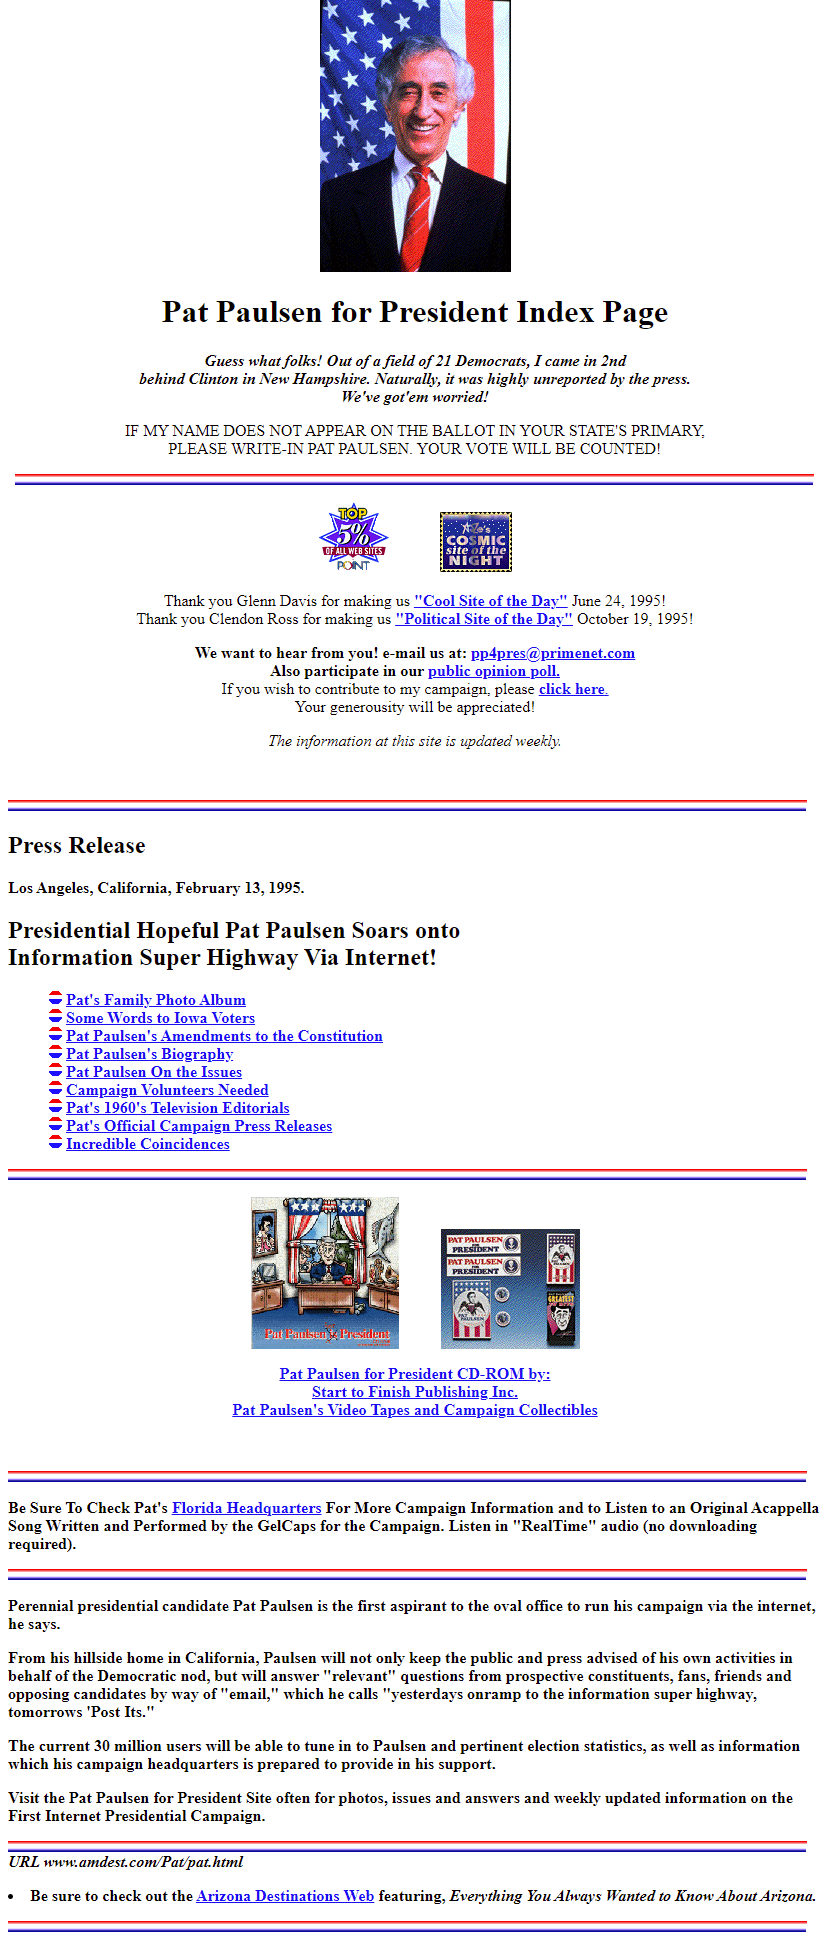 Pat Paulsen for President website in 1995